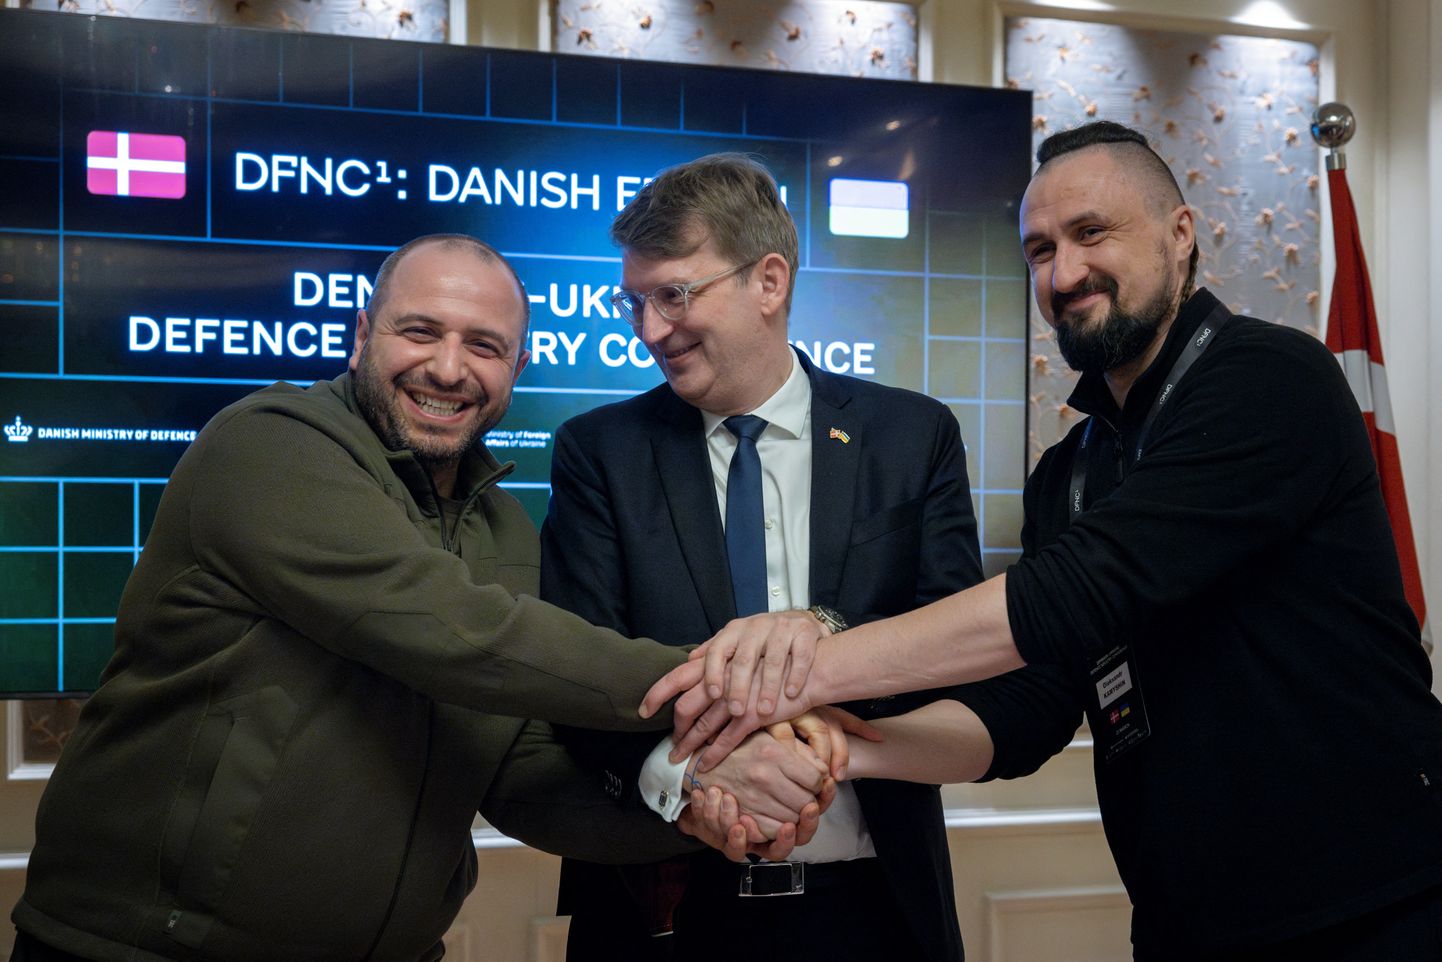 Taani kaitseminister Troels Lund Poulsen (keskel), Ukraina kaitseminister Rustem Umerov (vasakul) ja Ukraina strateegiliste tööstuste minister Oleksandr Kamõšin Taani-Ukraina kaitsekoostöö konverentsil 23. märtsil Kiievis.